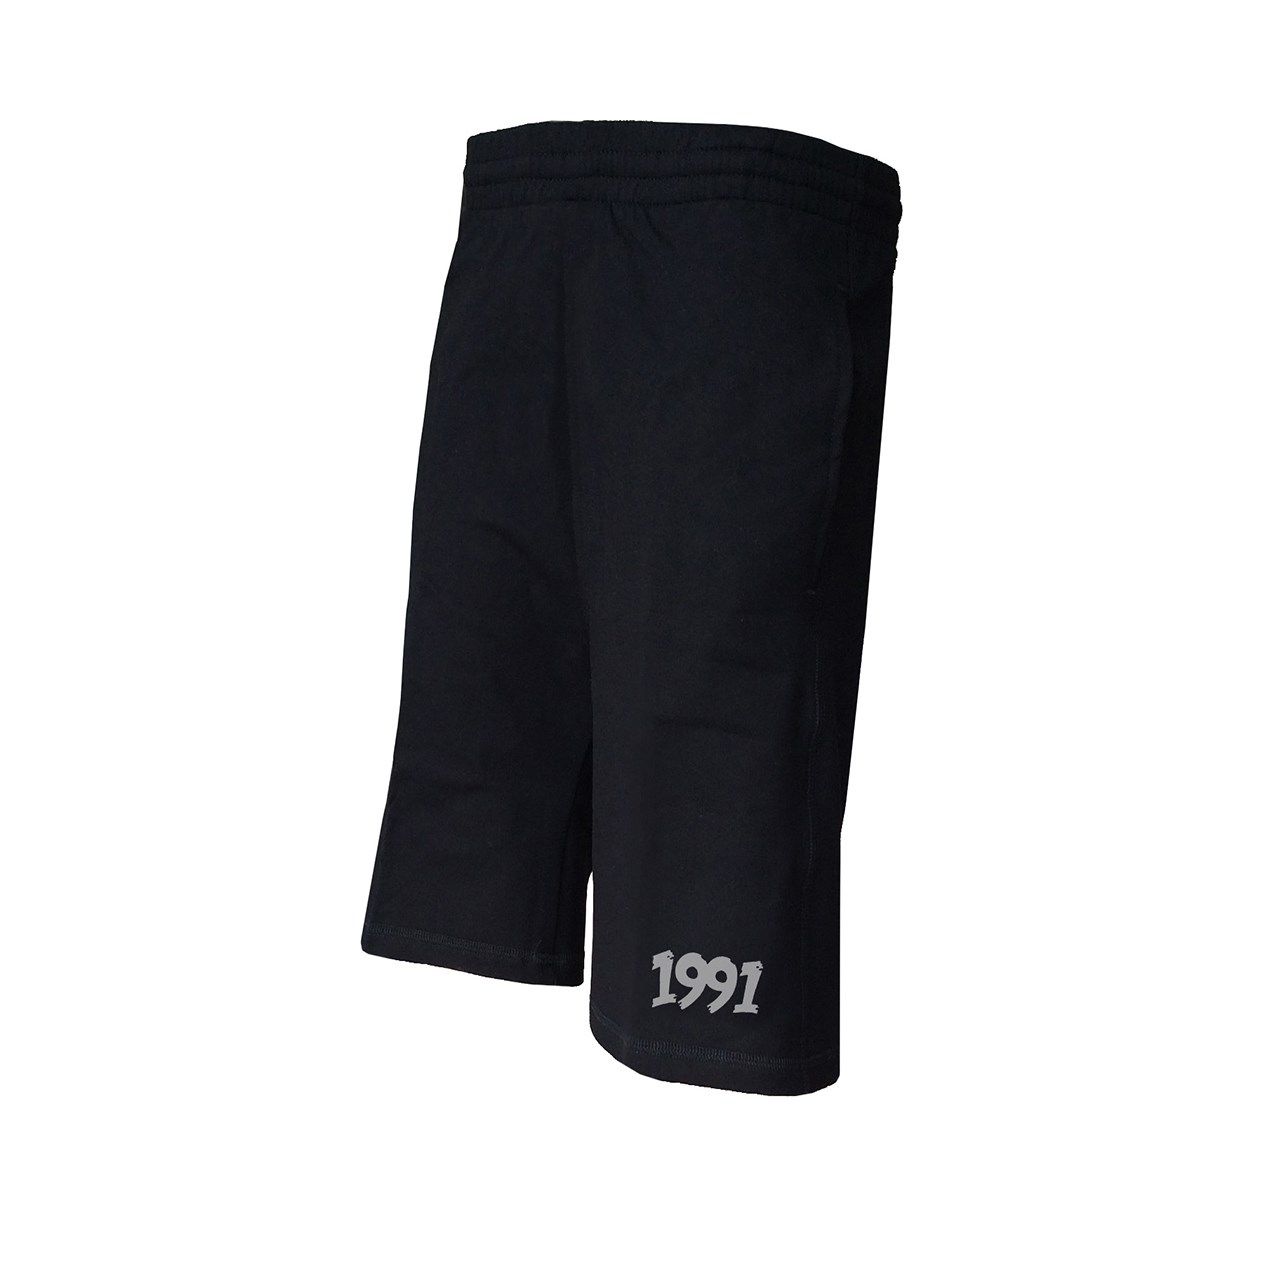 شلوارک ورزشی مردانه 1991 اس دبلیو مدل shorts Simplex Black -  - 1